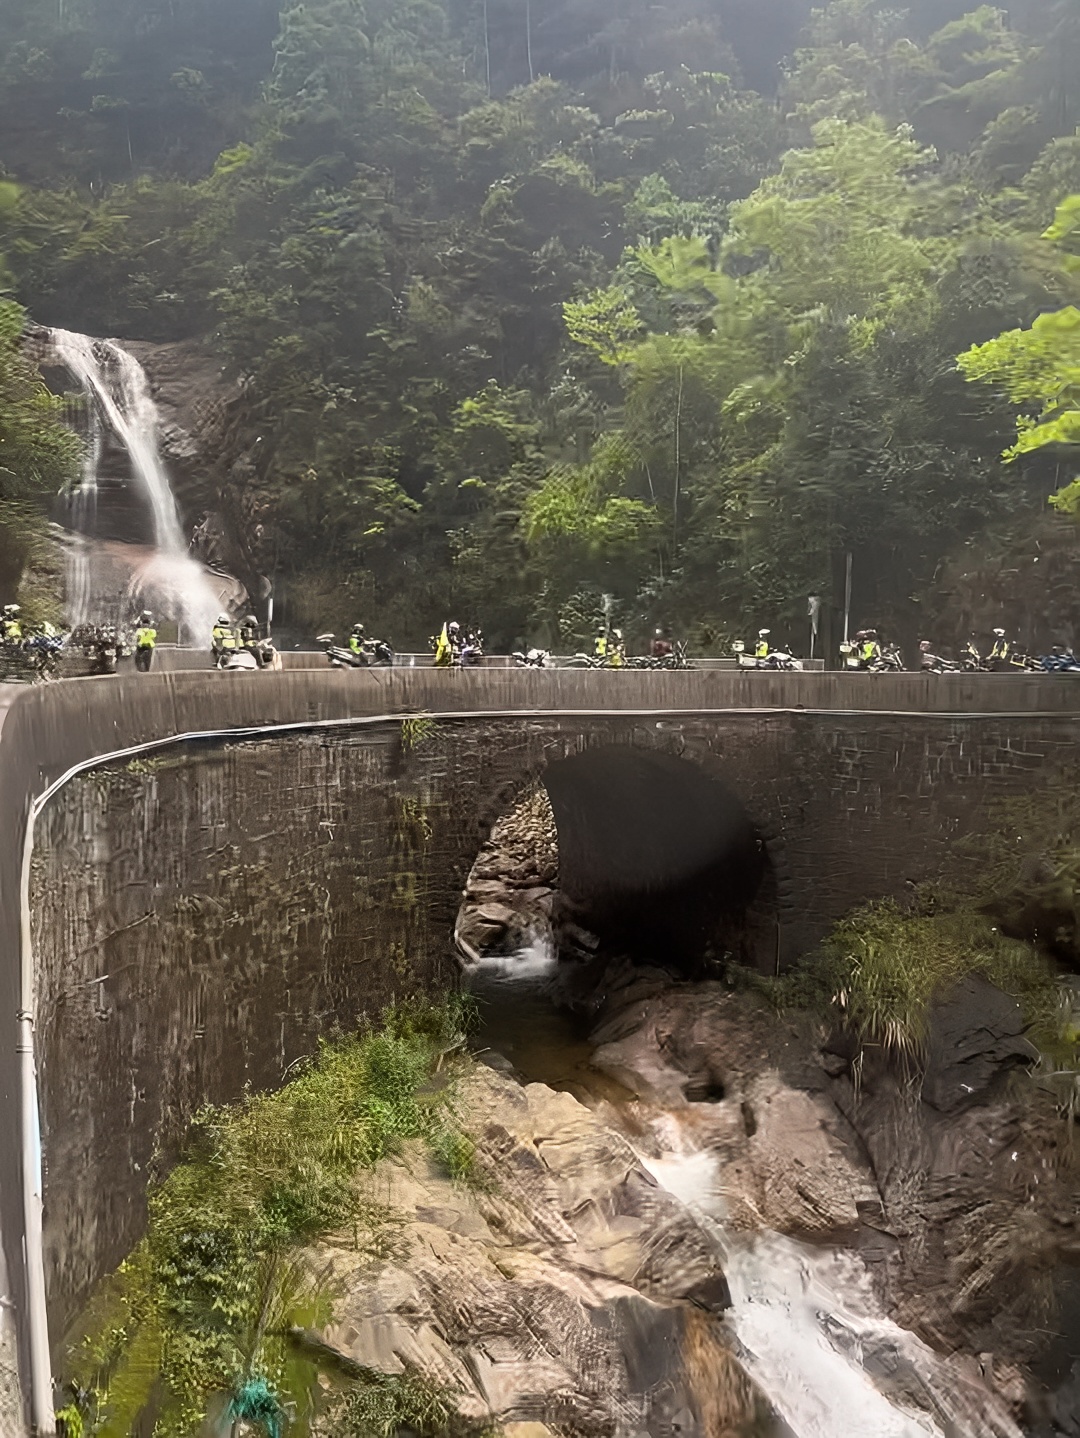 一个在323国道上，开车直达的瀑布，龙潭角瀑布，骑士们打卡圣地(导航视频地址直达)。摩旅精品路线：打